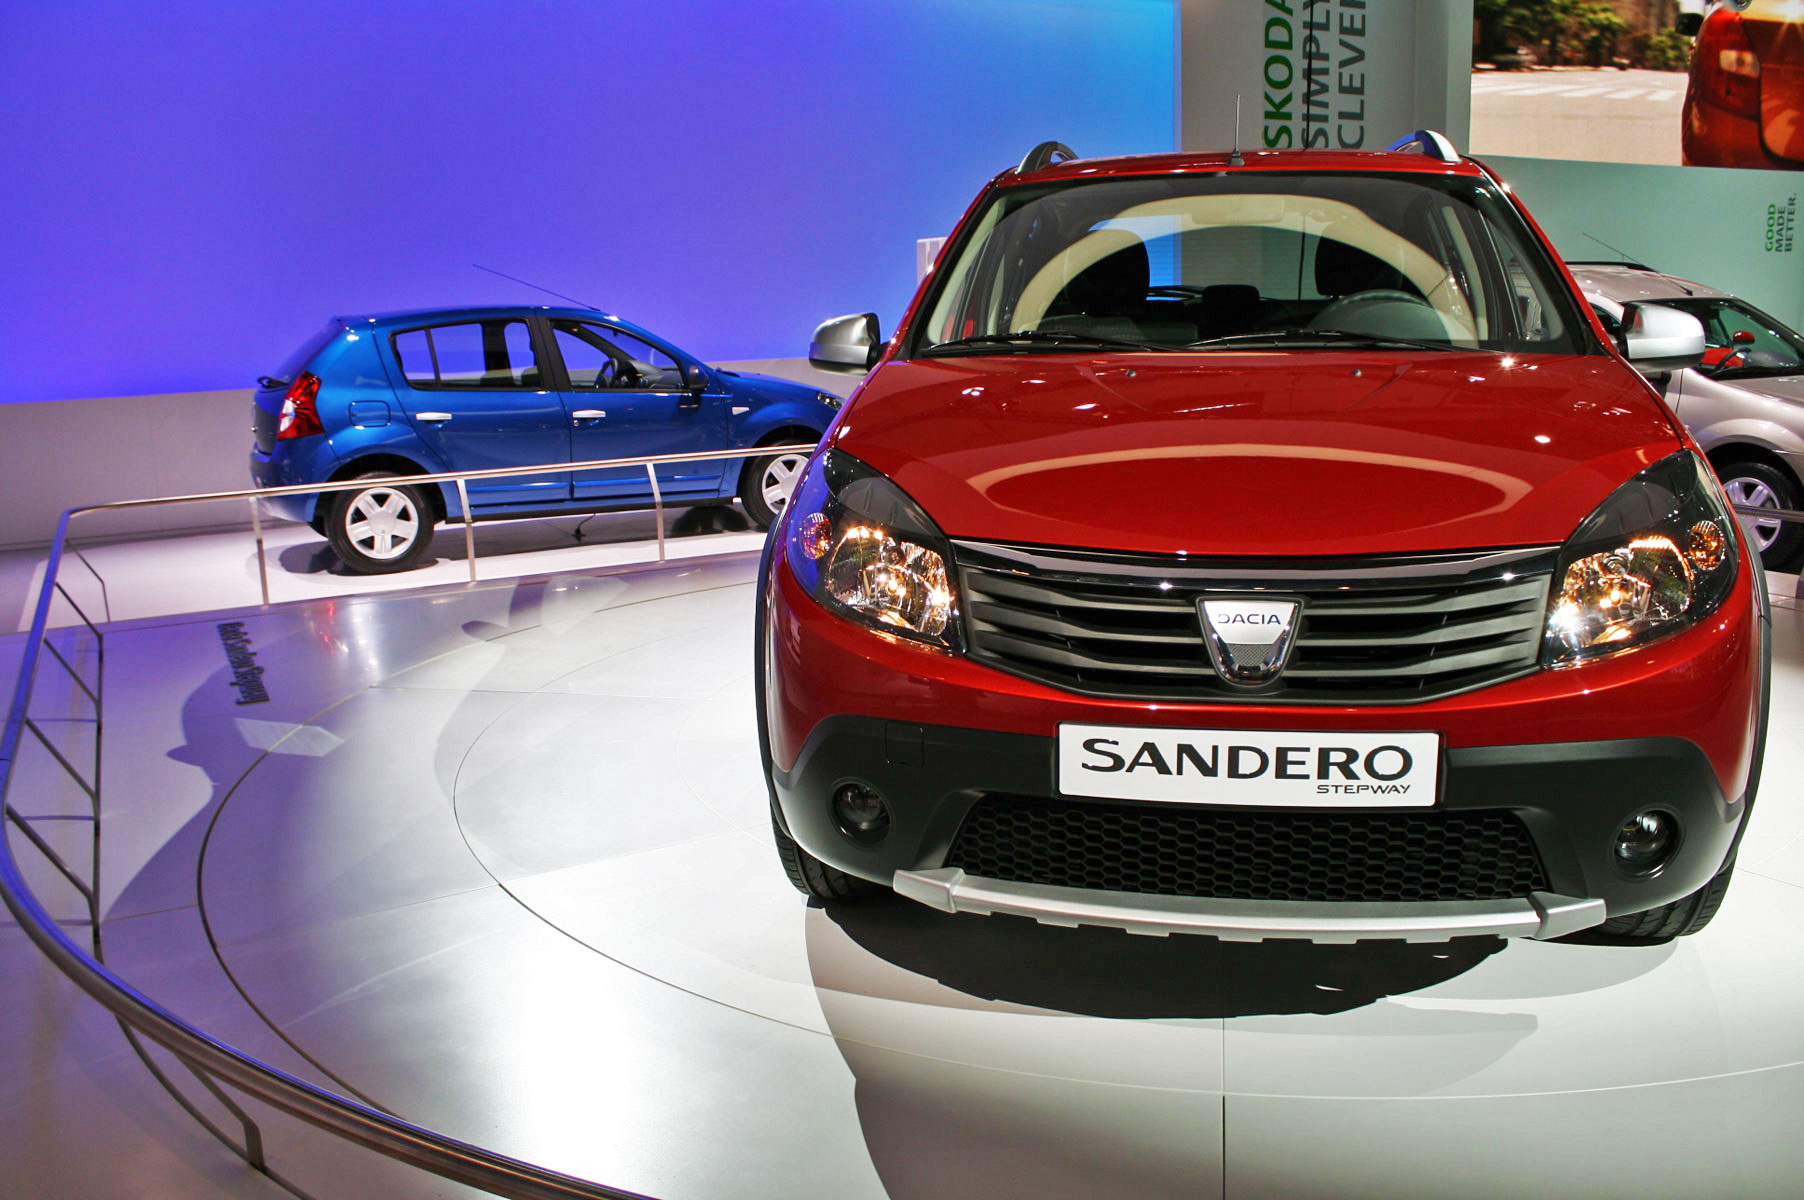 Vanzarile Dacia au urcat cu 12% in 2010. Sandero e cel mai popular model